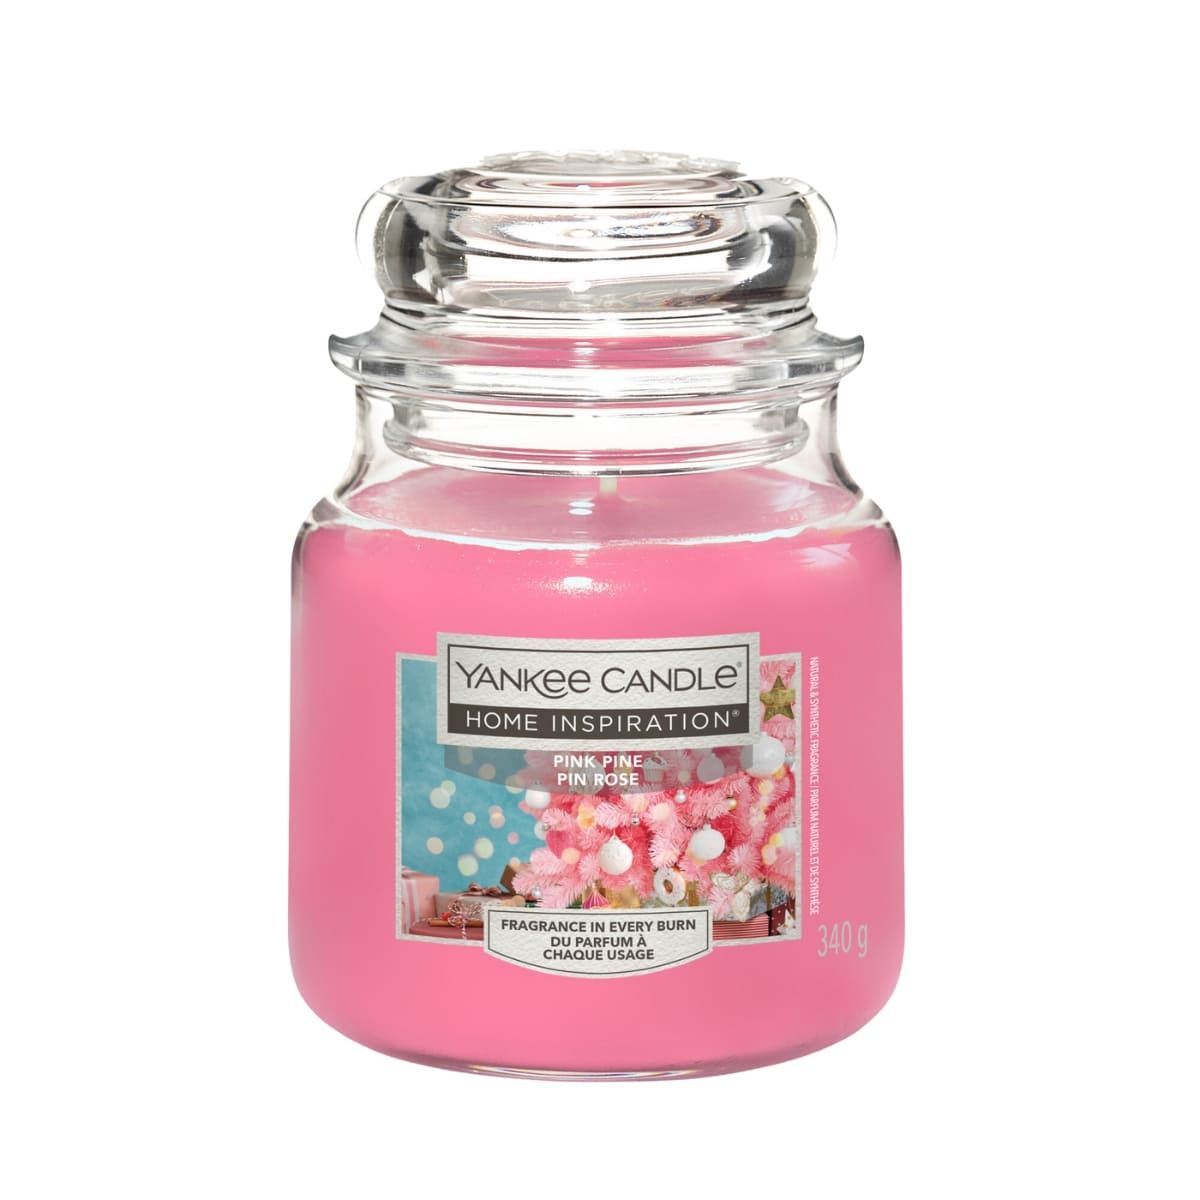 Ароматическая Свеча Yankee Candle Home Inspiration Pink Pine, 340 гр ароматическая свеча yankee candle home inspiration coral peony 340 гр